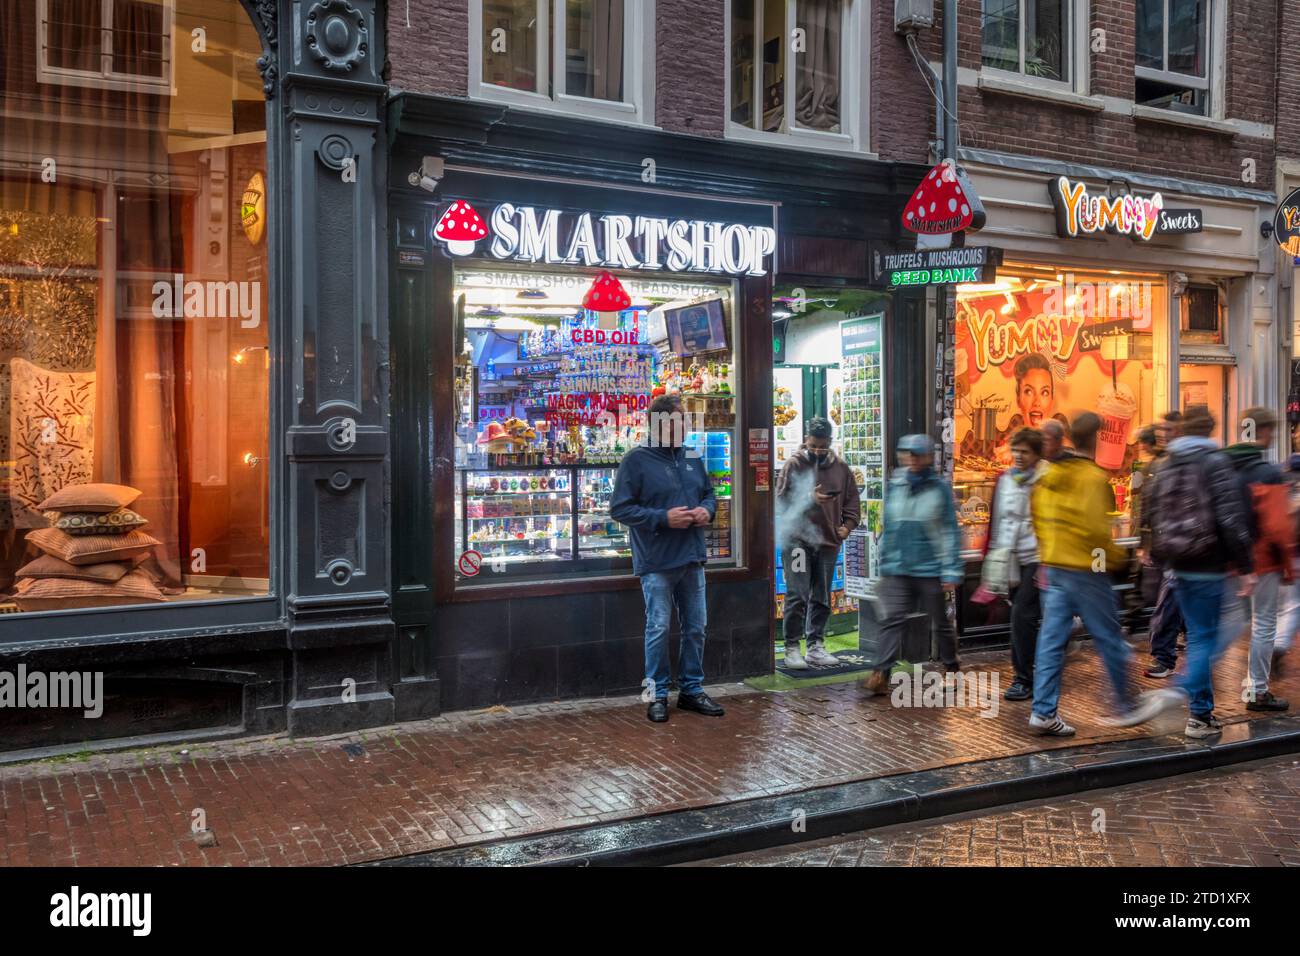 Smartshop in Oude Hoogstraat, Amsterdam.  Smartshops sell natural psychedelics, magic truffles, vitamins, weed seeds etc. Stock Photo